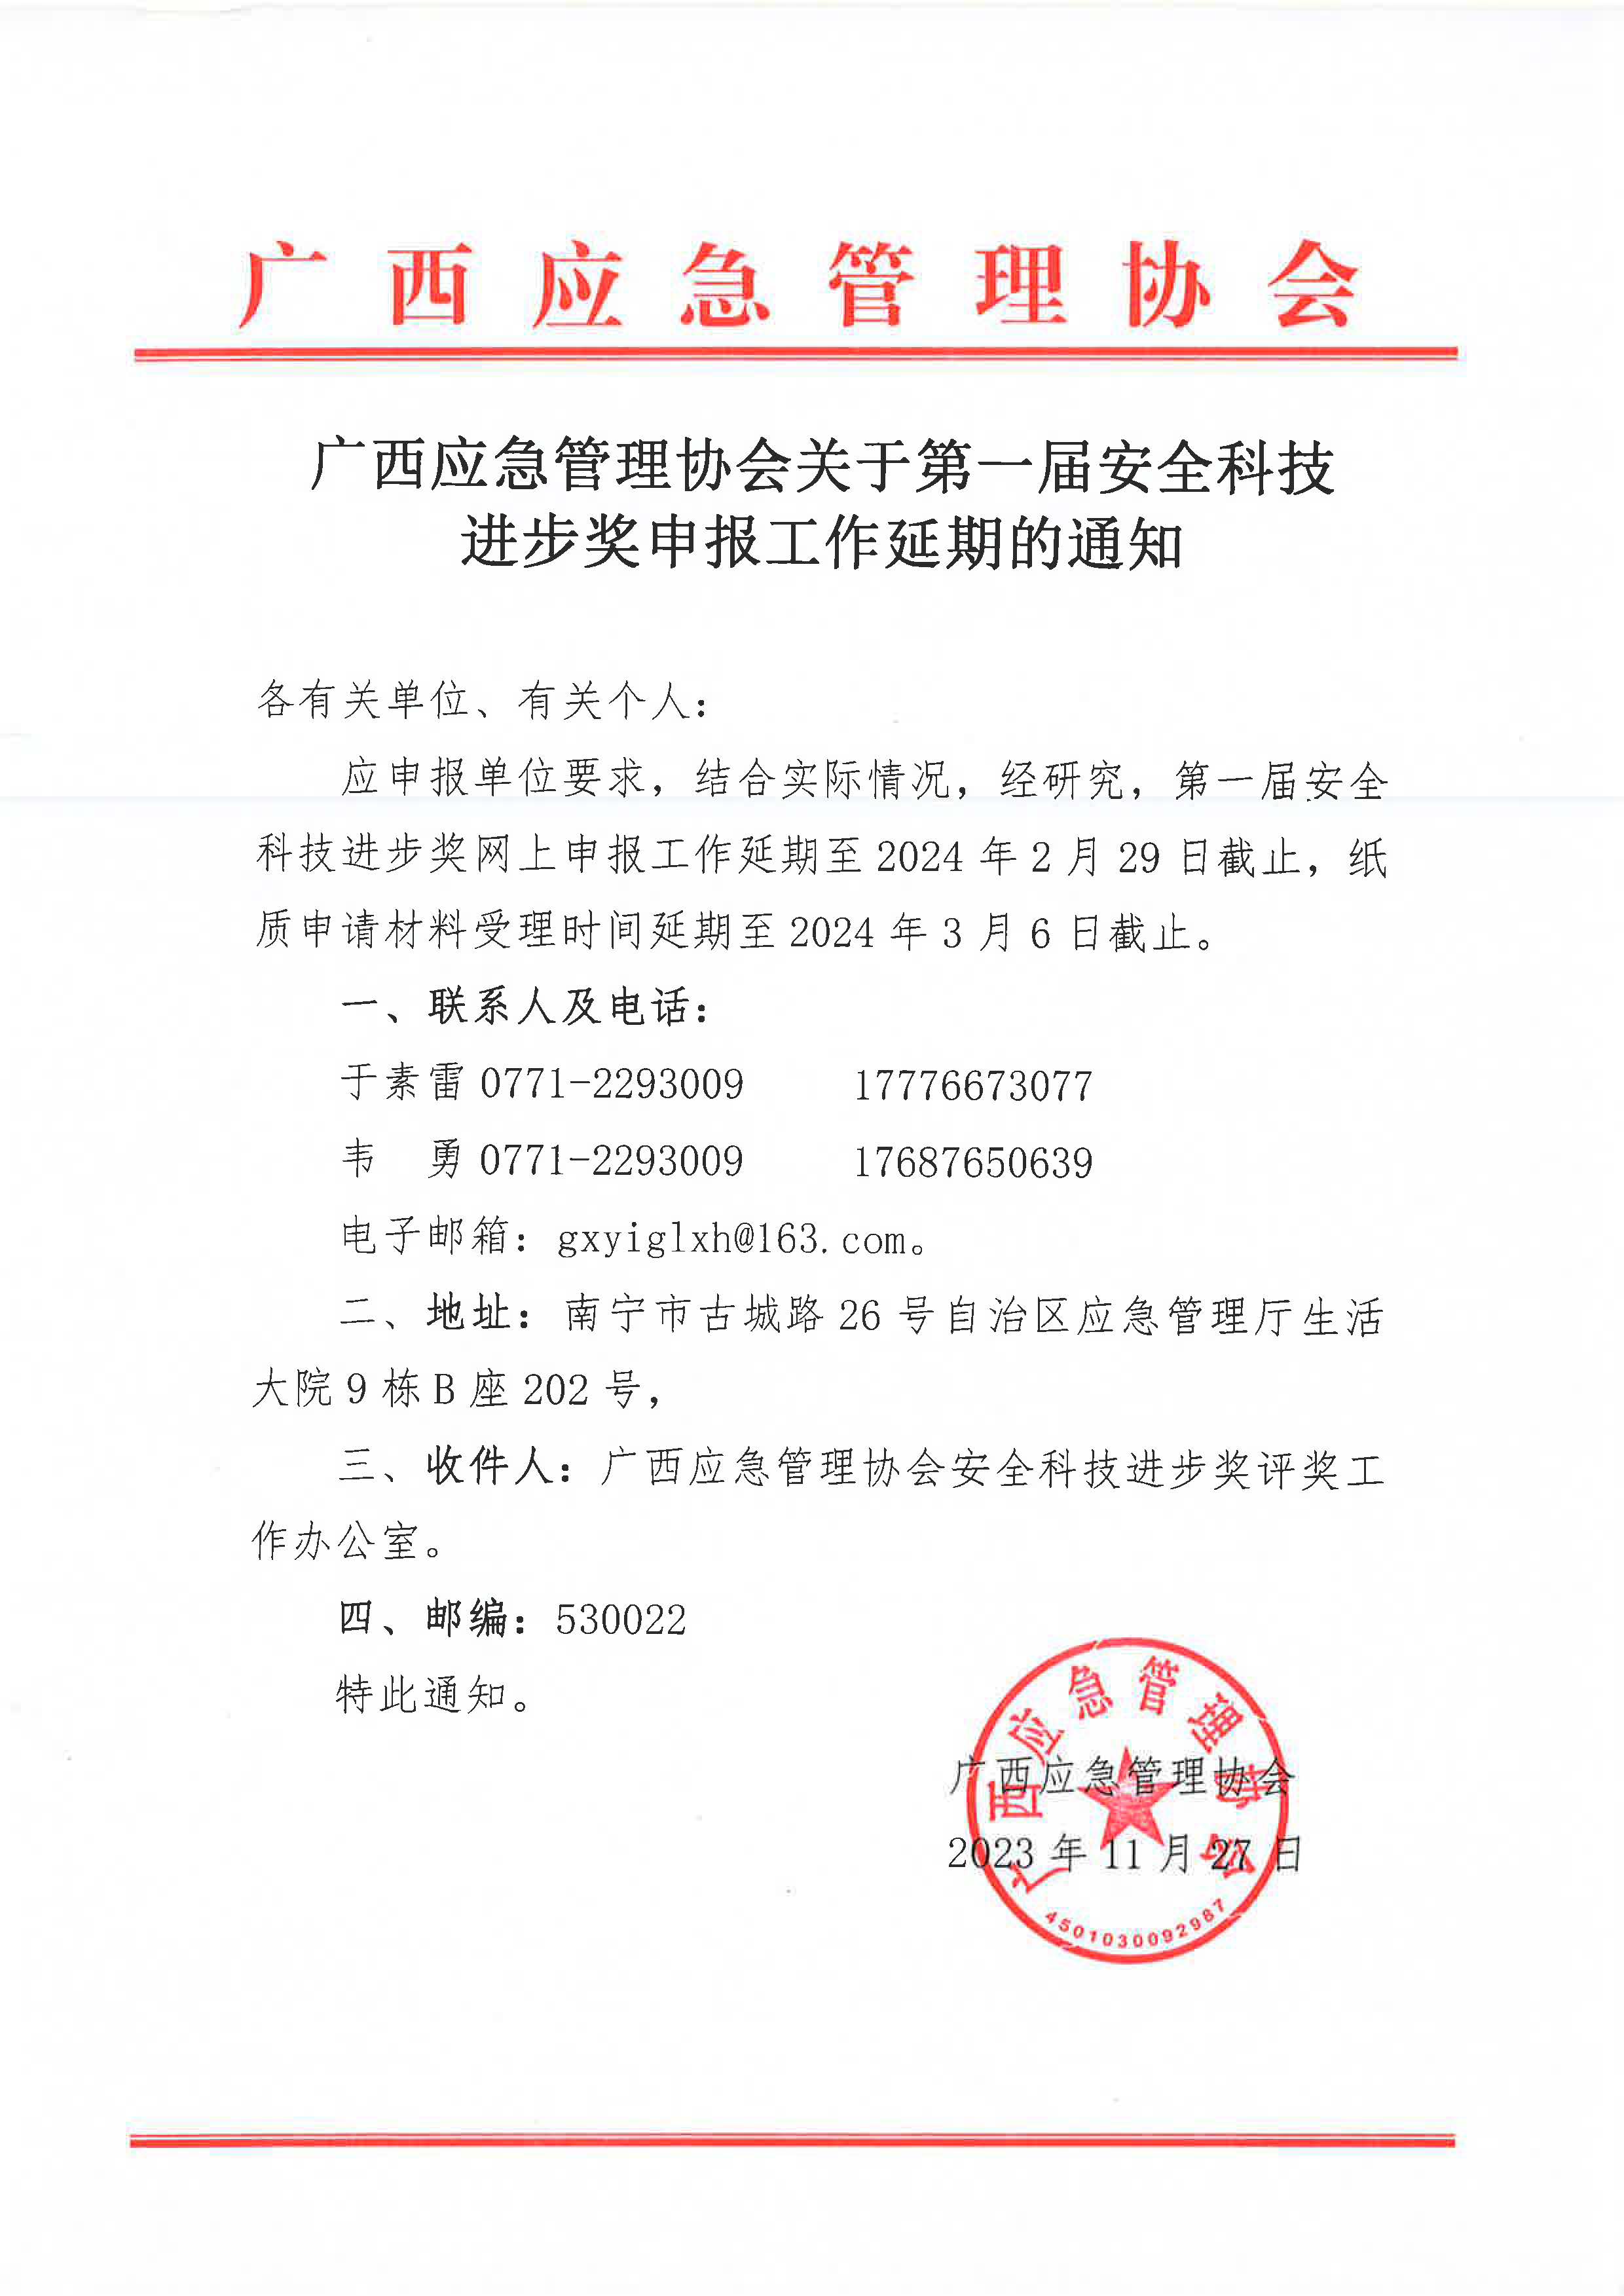 广西应急管理协会关于第一届安全科技进步奖申报工作延期的通知